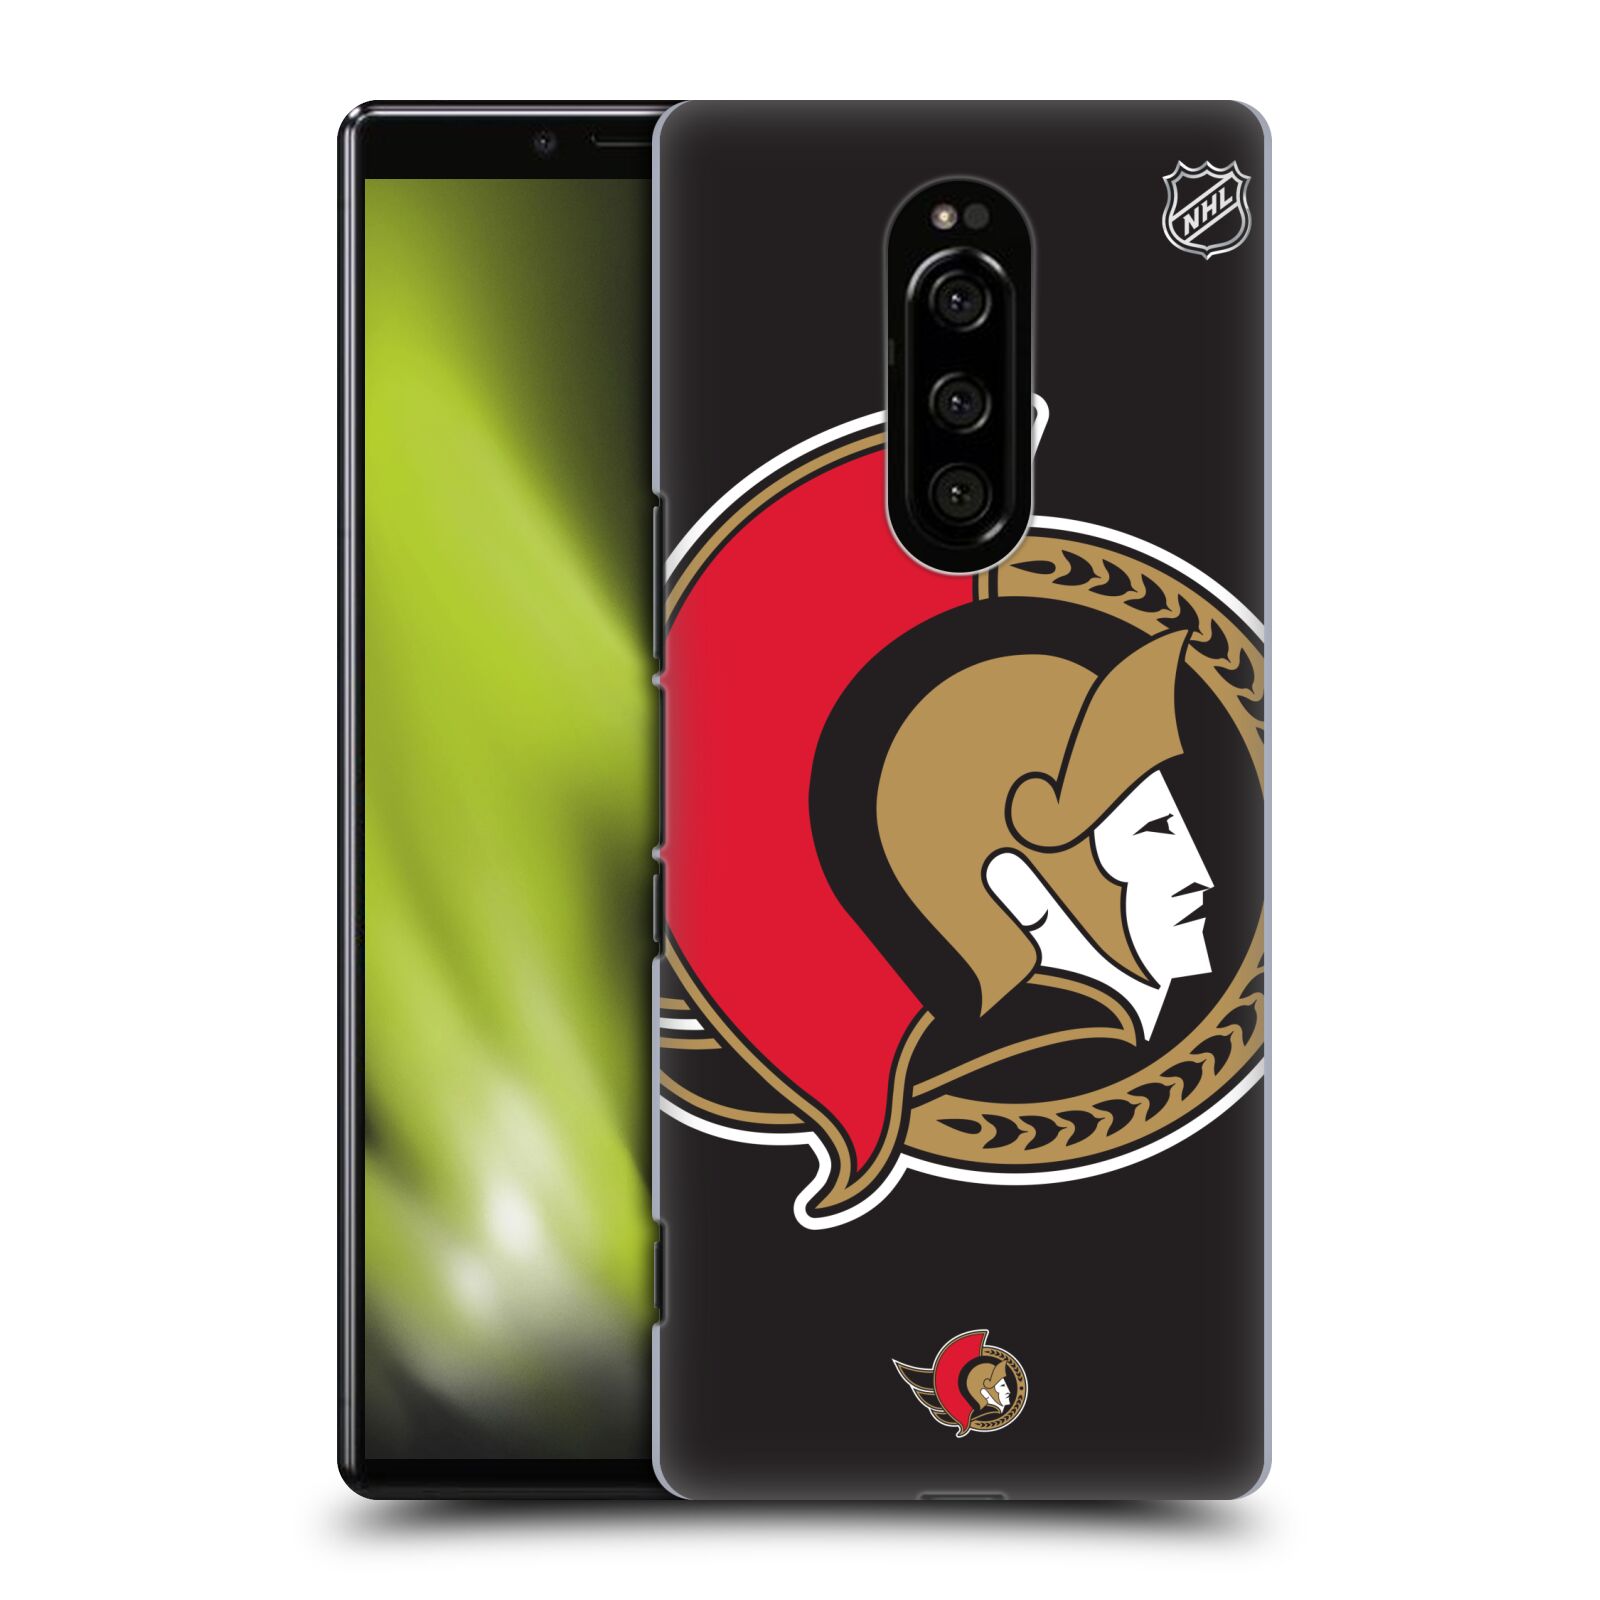 Pouzdro na mobil Sony Xperia 1 - HEAD CASE - Hokej NHL - Ottawa Senators - Velký znak